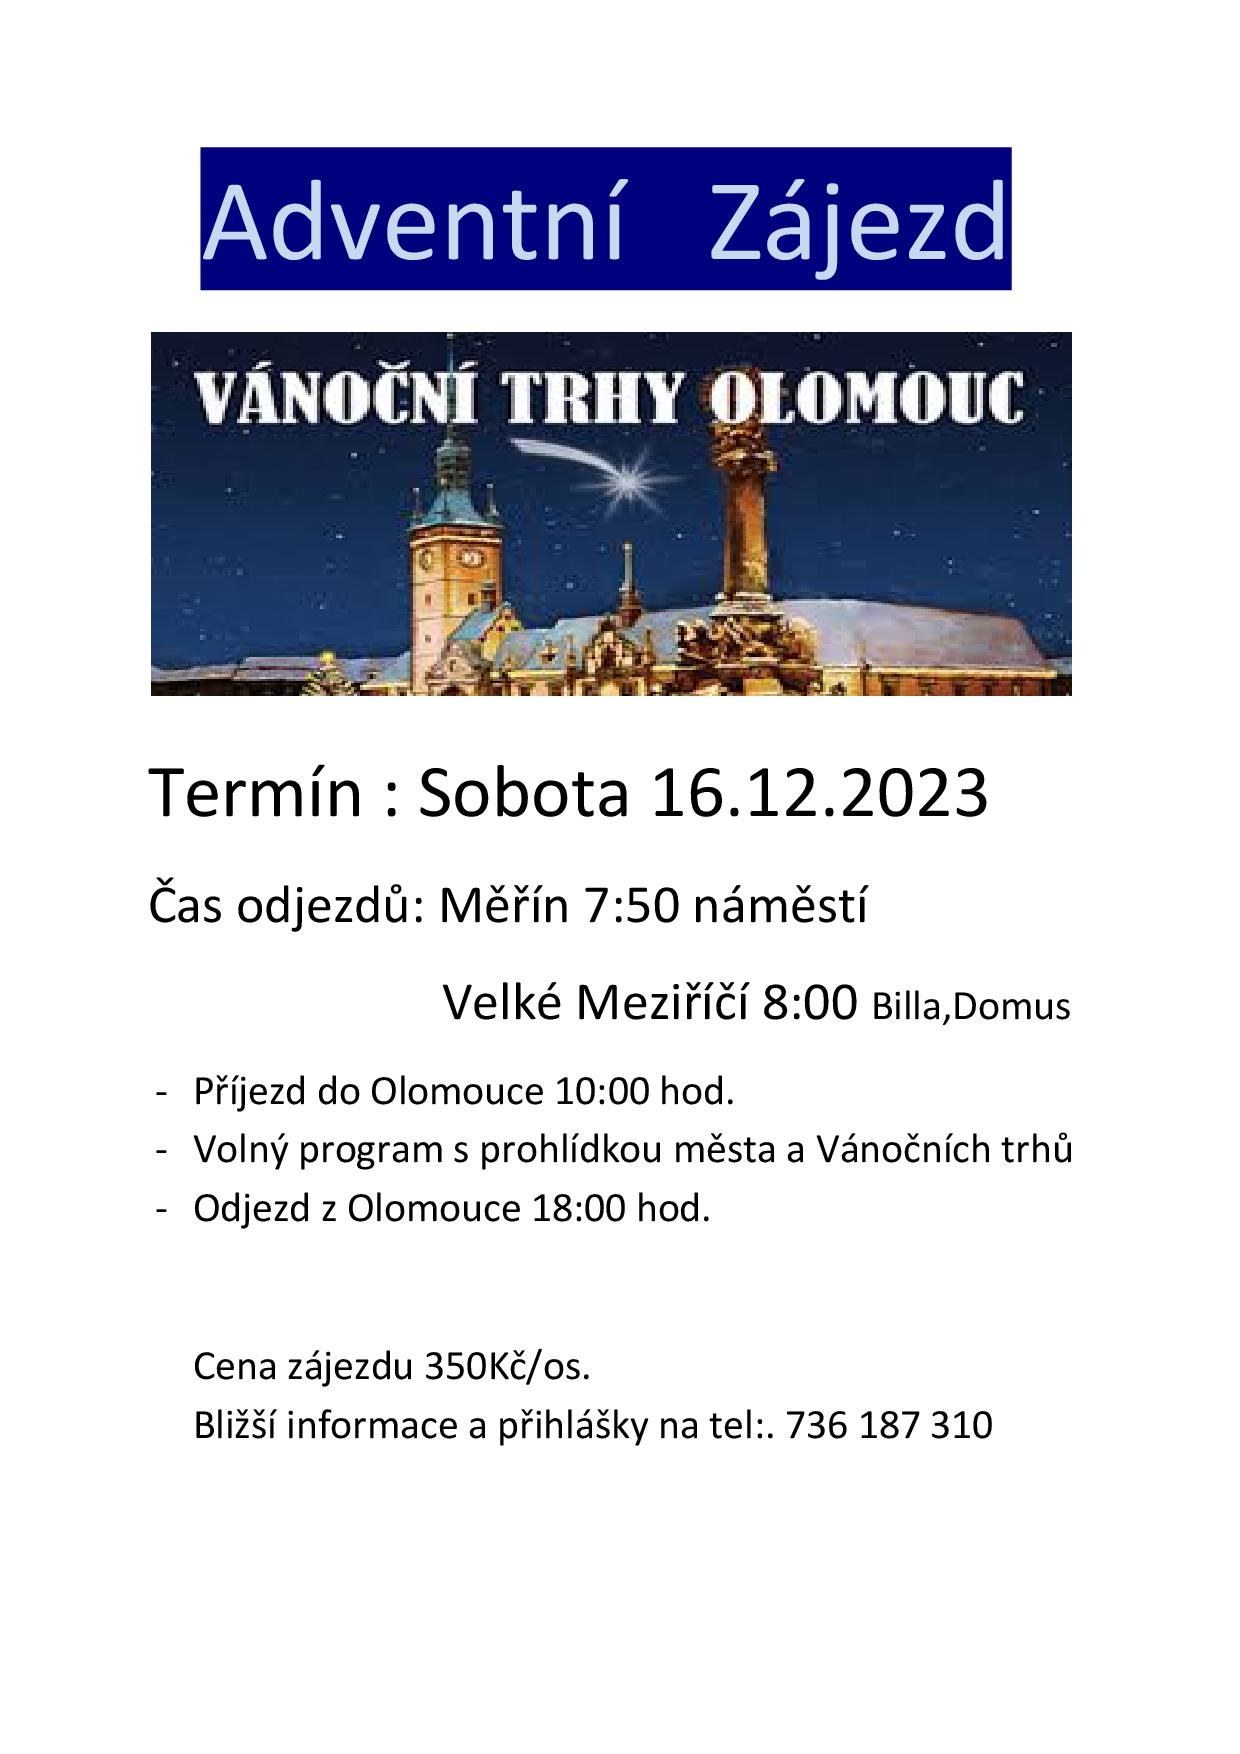 Autobusem na výlet na adventní trhy do Olomouce a po Vánocích do termálů na Slovensko